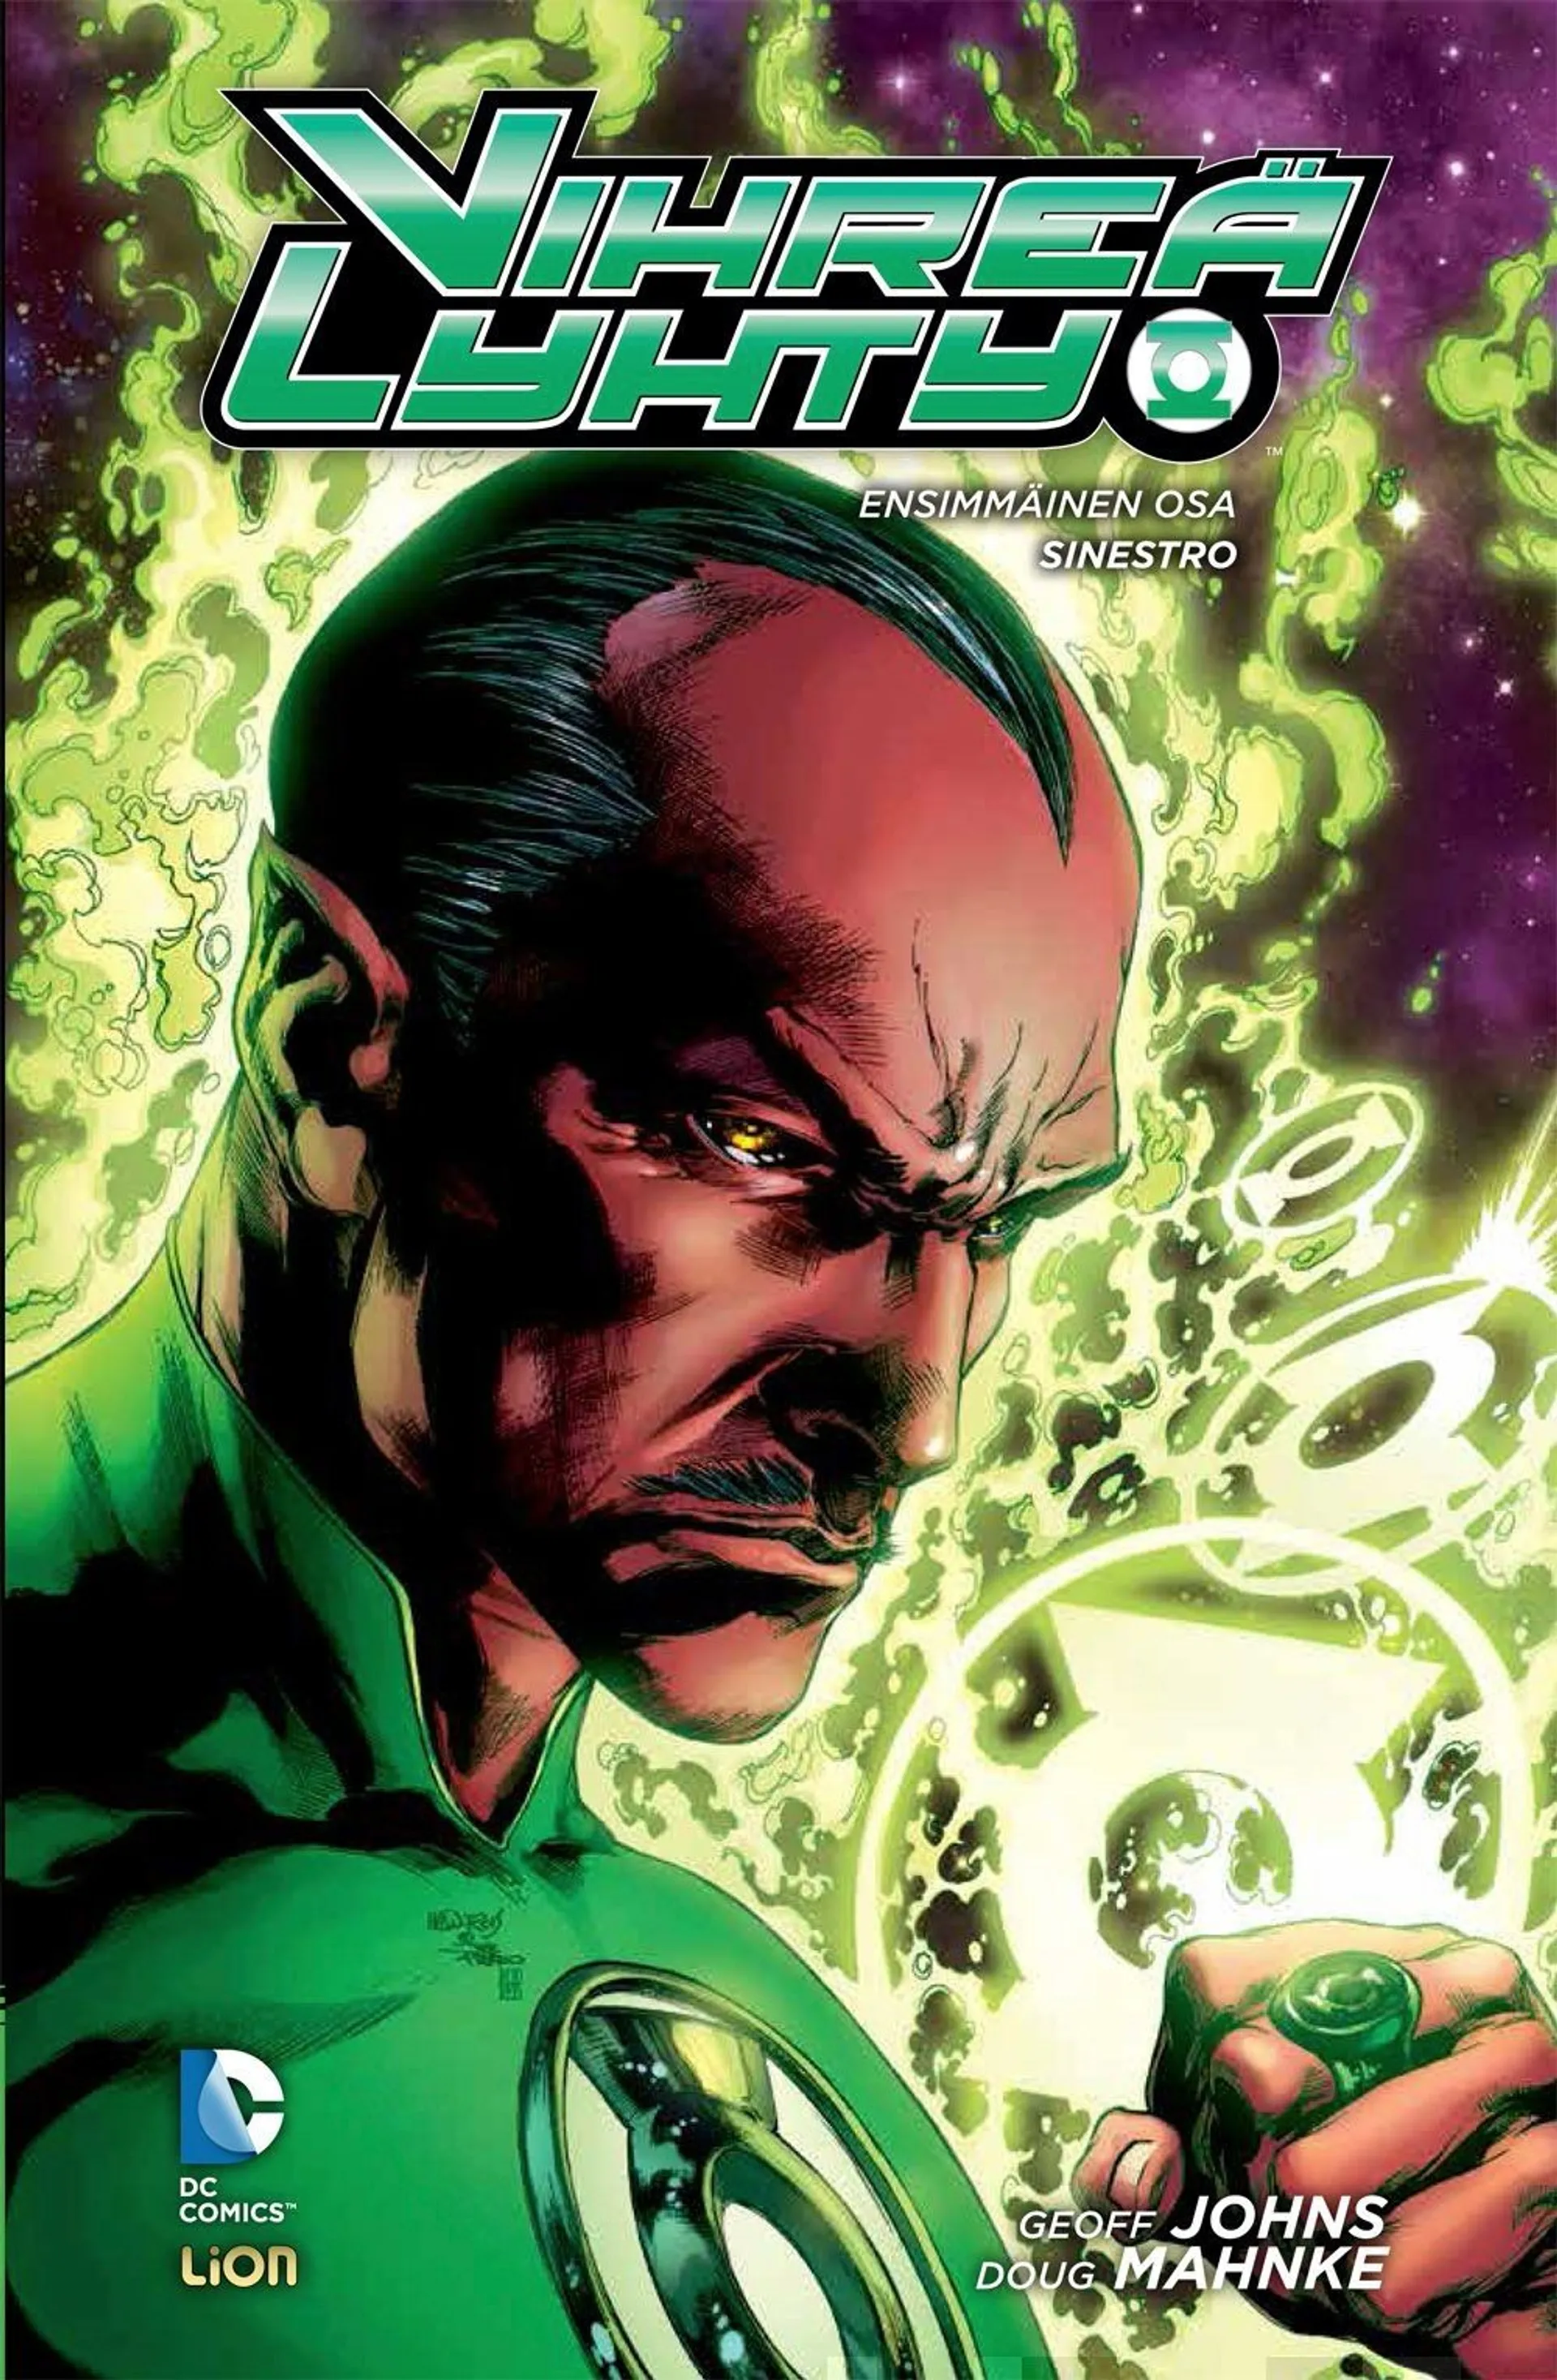 Johns, Vihreä Lyhty 1 - Sinestro